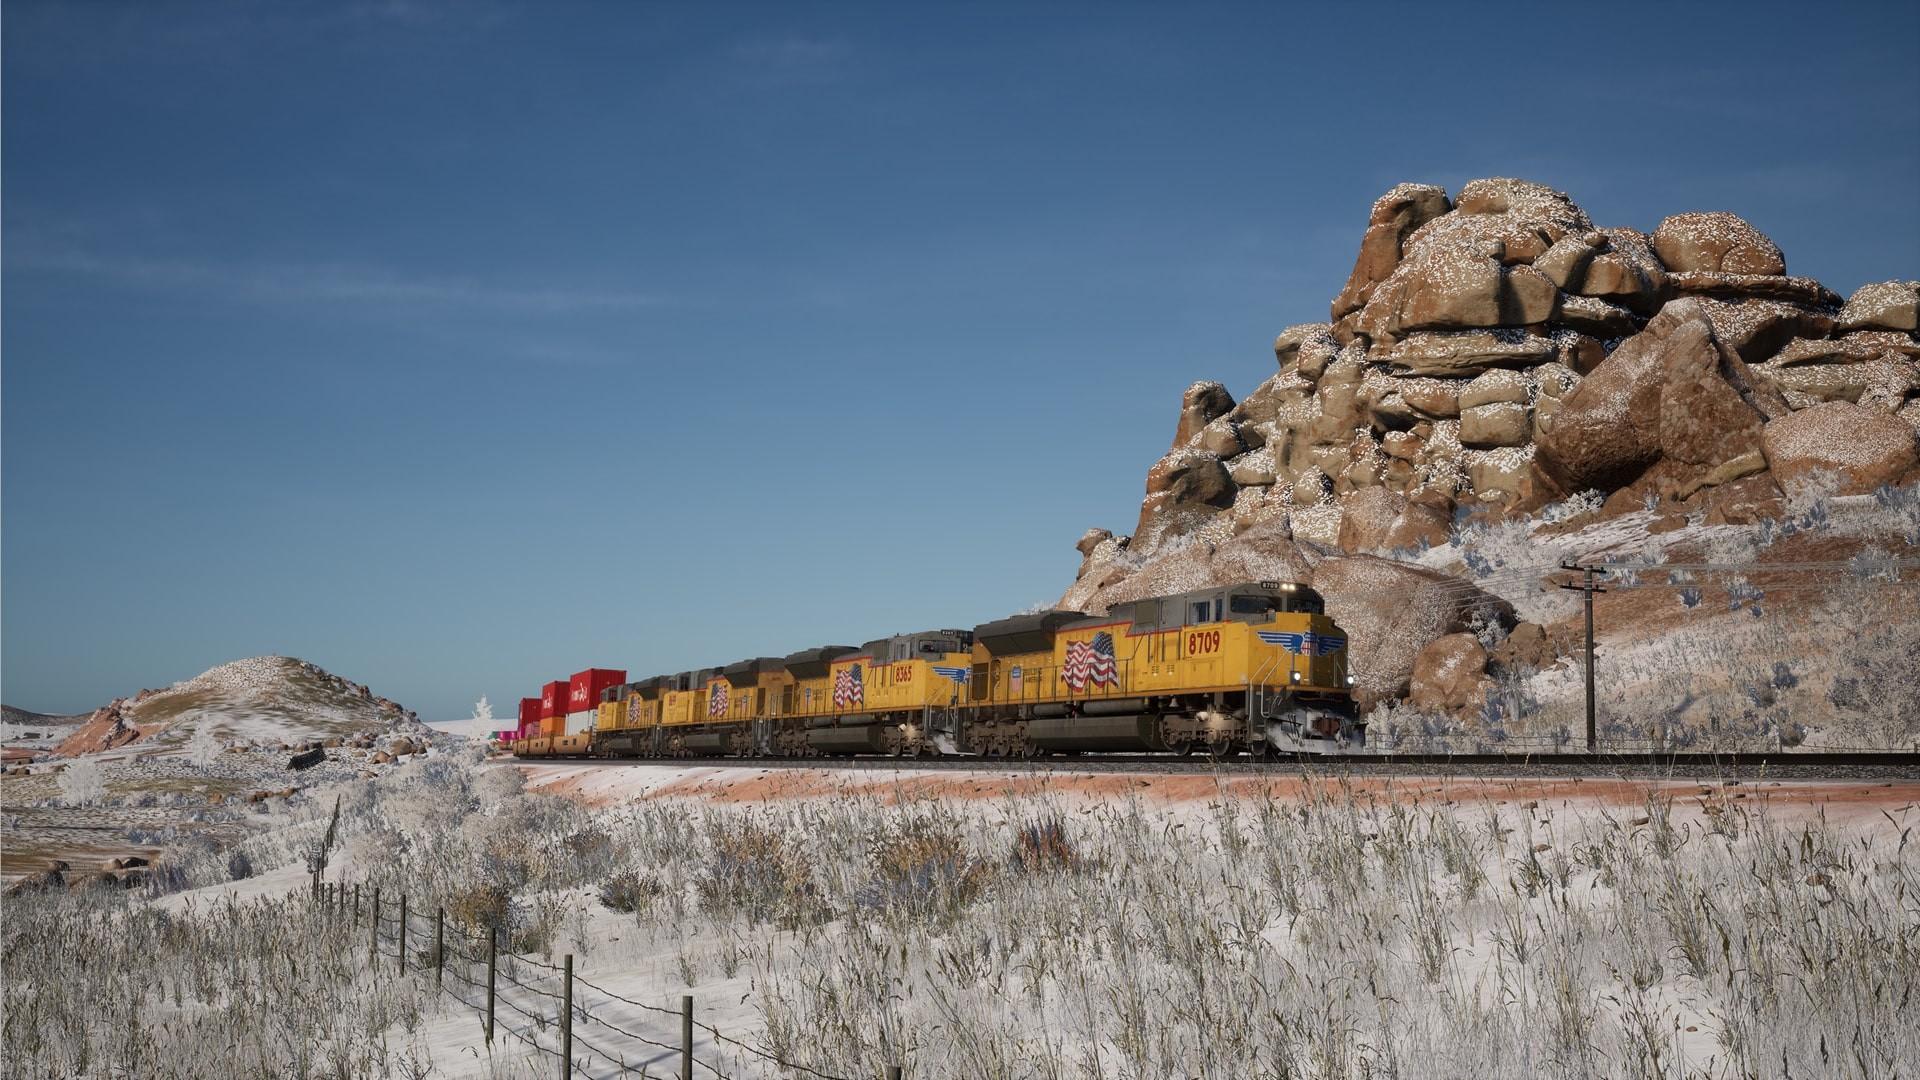 Train Sim World 2: Sherman Hill: Cheyenne - Laramie Route Add-On